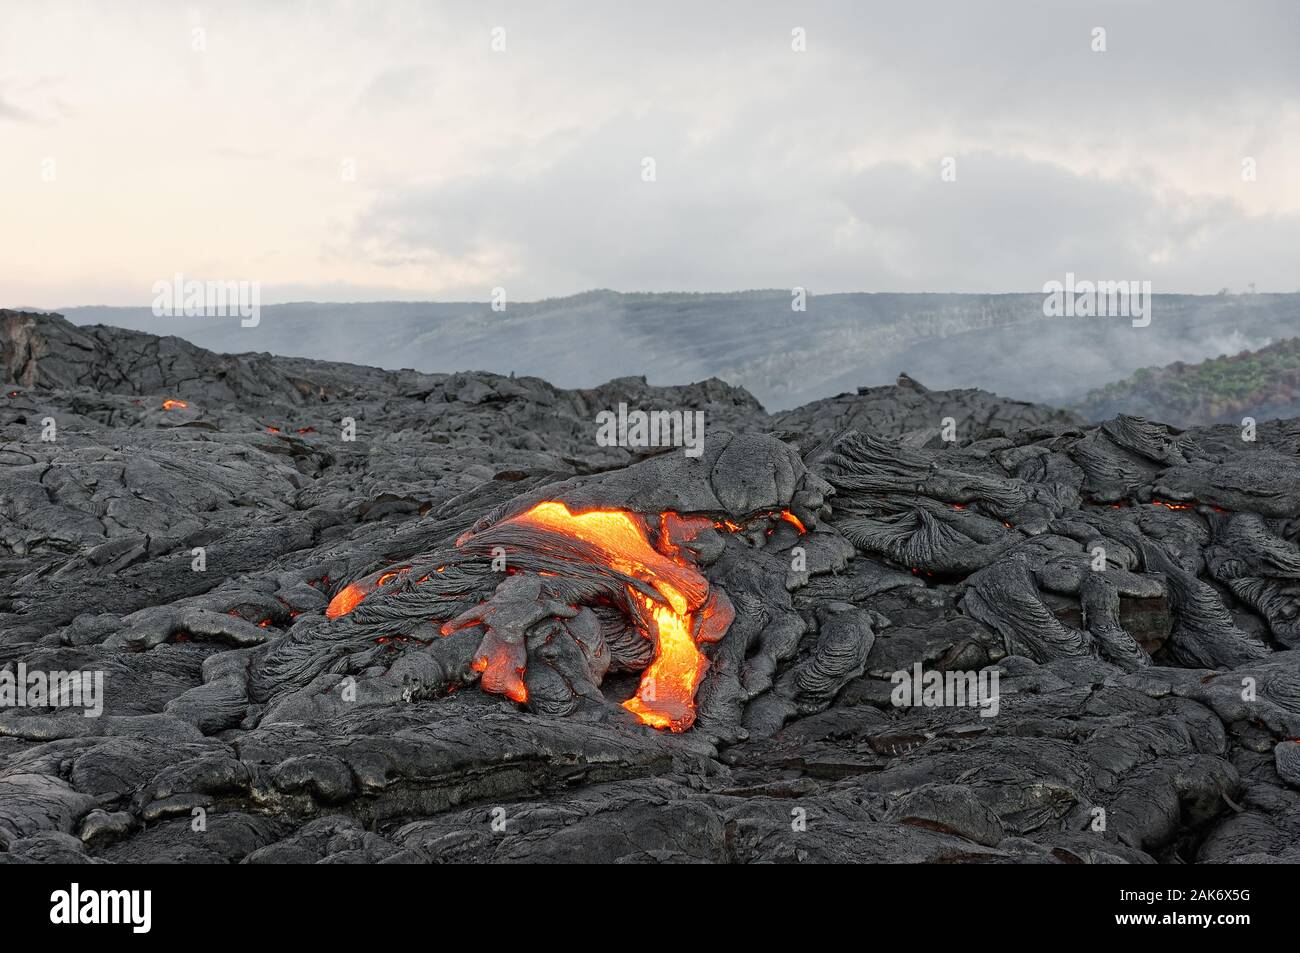 Heiße Magma eines aktiven Lavastrom Austritt aus einer Spalte, die Hitze  der glühende Lava macht die Luft flimmert, die Lava langsam abkühlt und  erstarrt Stockfotografie - Alamy